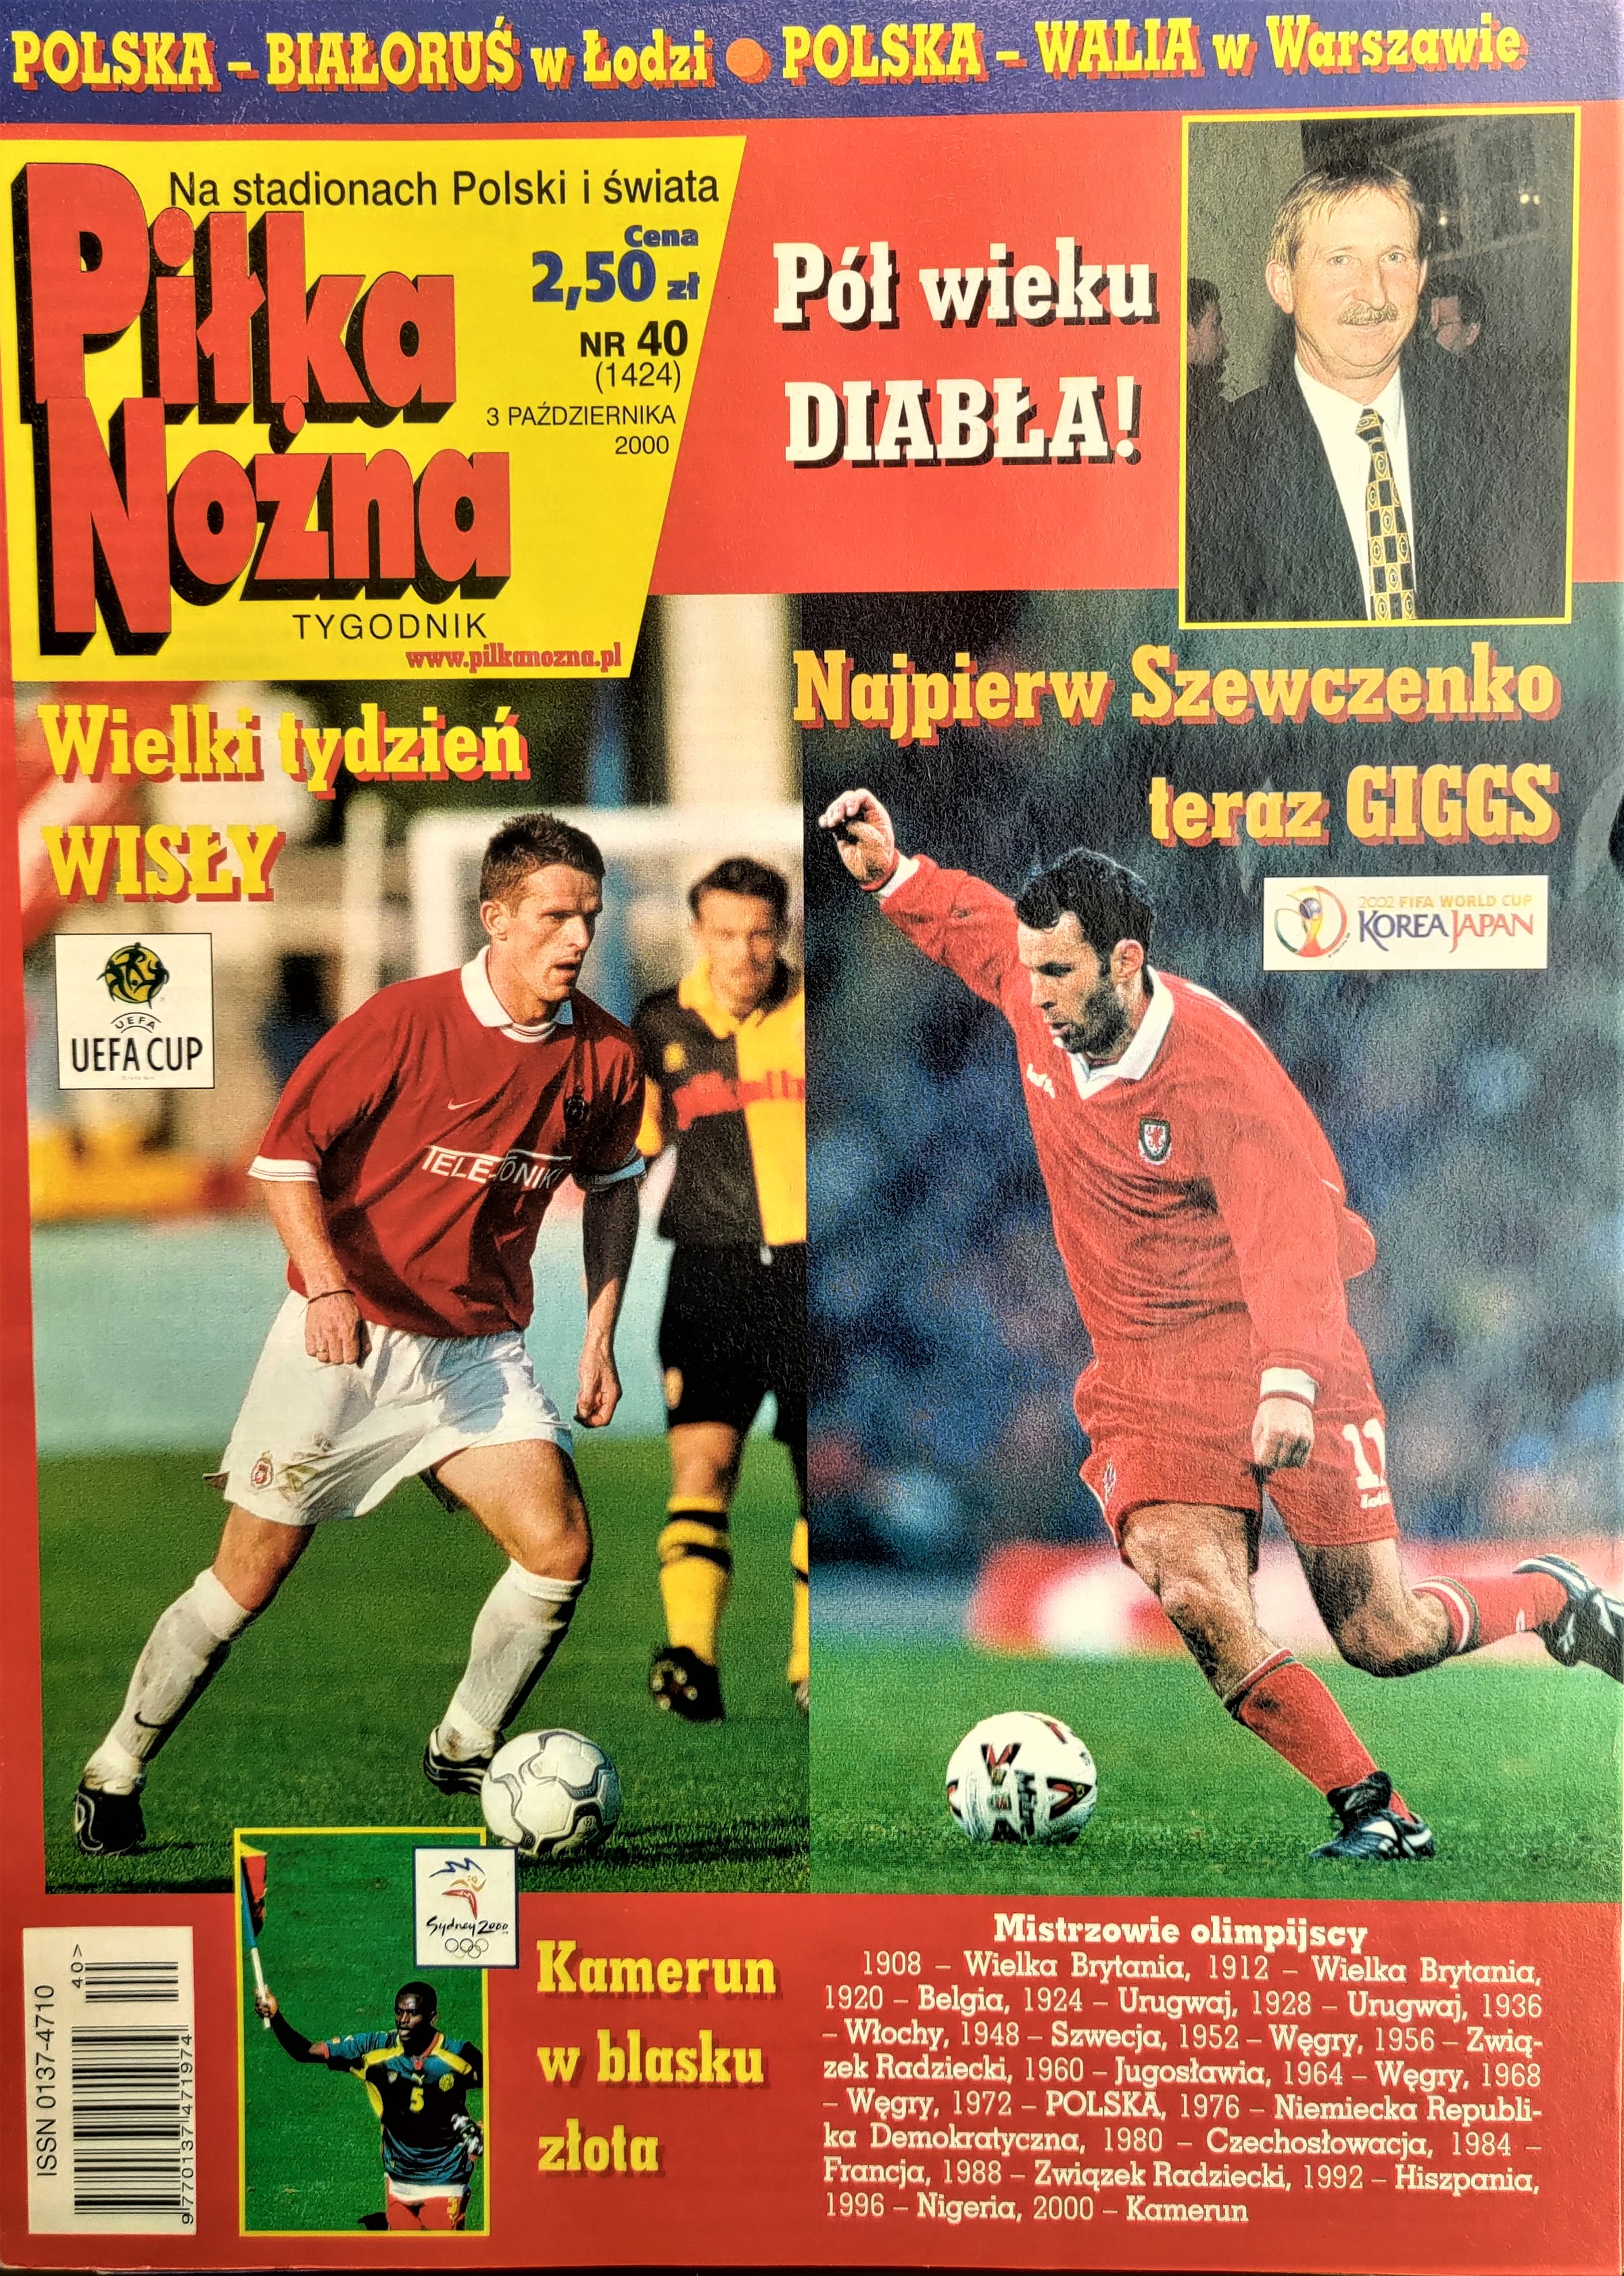 Piłka Nożna po meczu Wisła Kraków - Real Saragossa 4:1 pd, k 4-3 (28.09.2000)